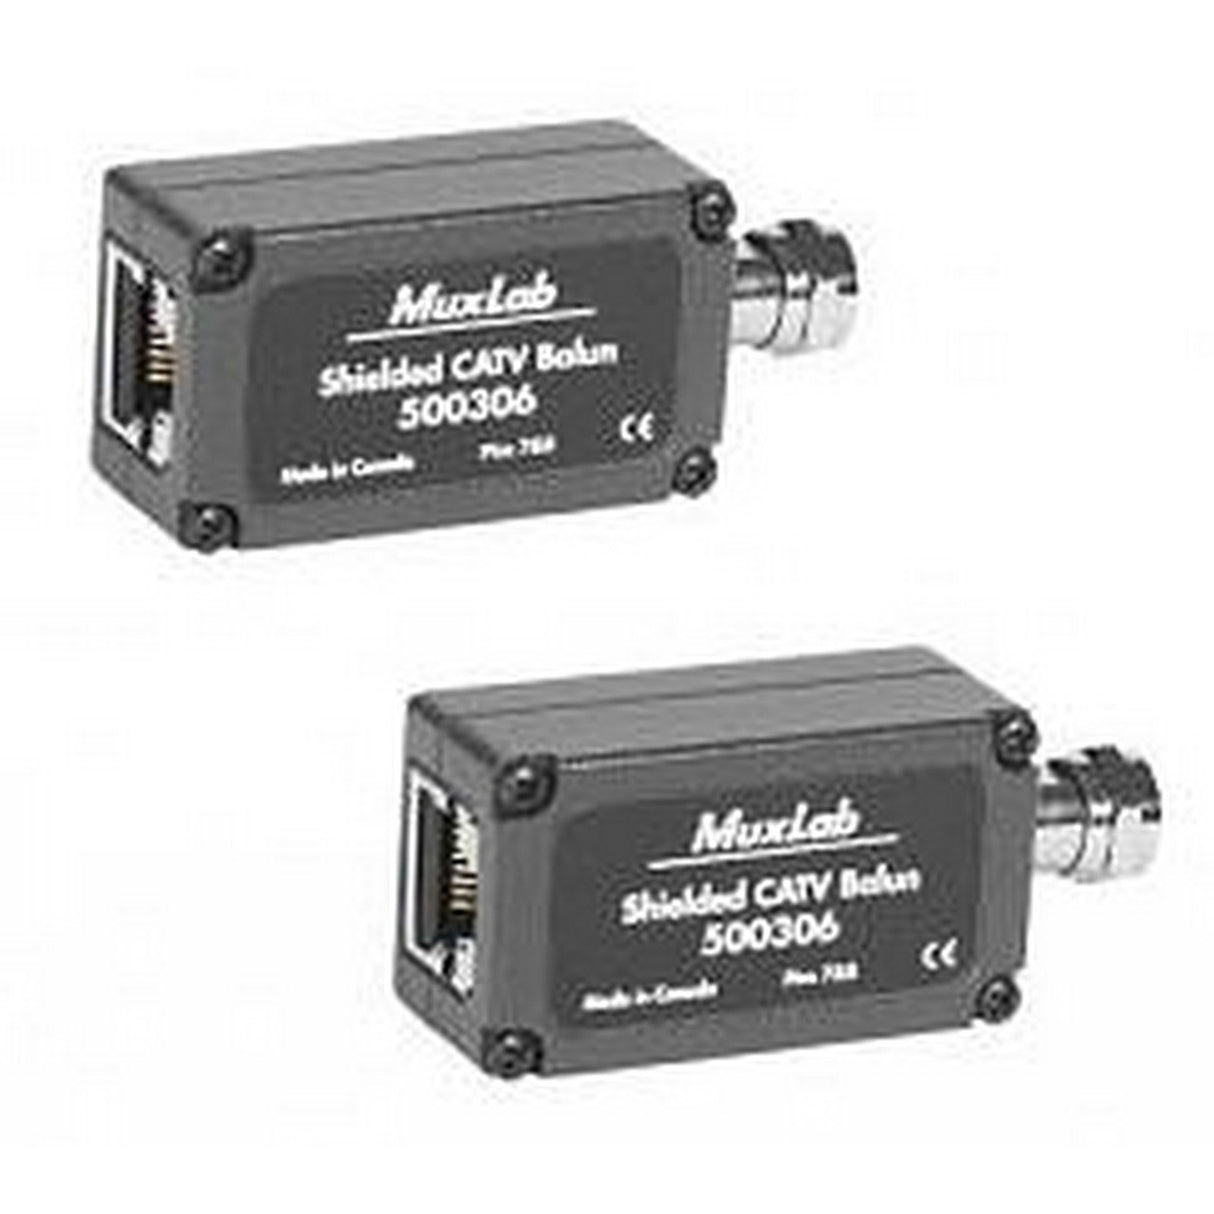 MuxLab 500306-2PK | 2 Pack Shielded CATV Balun